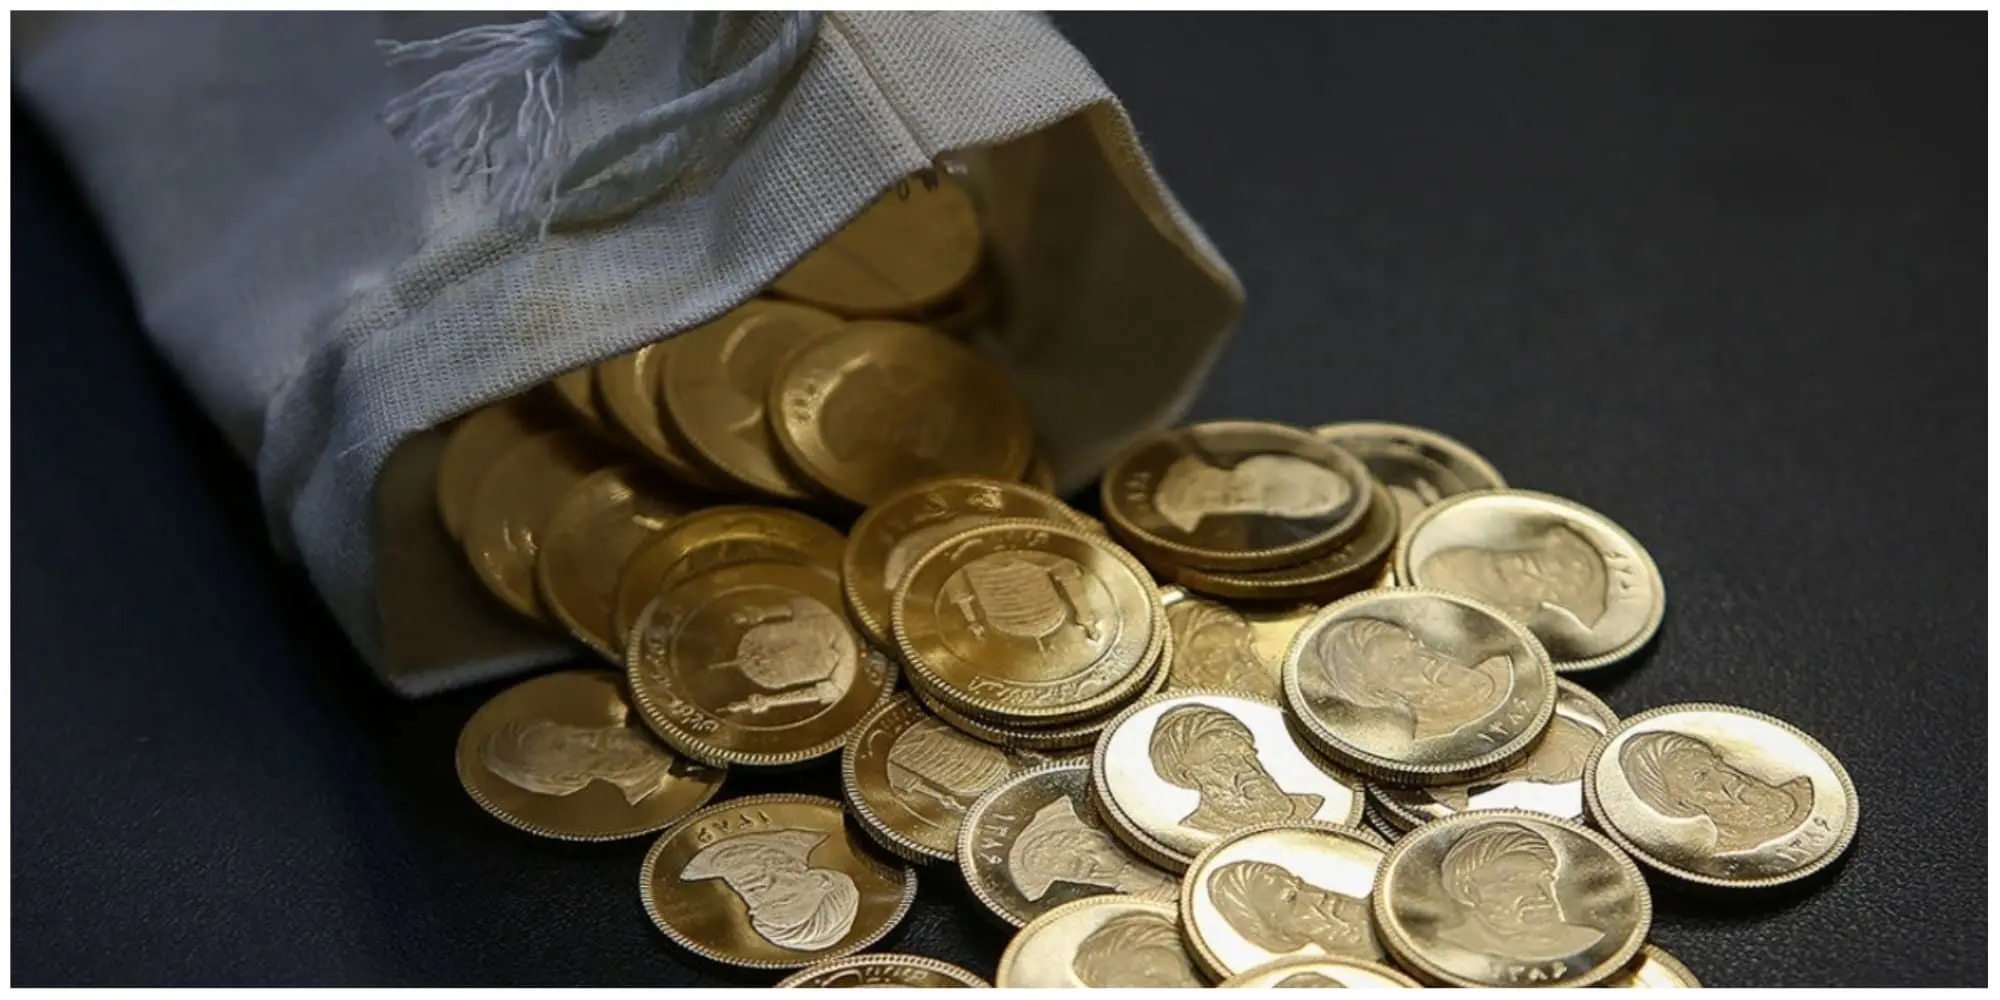 سکه در یک قدمی کانال جدید / پیش بینی قیمت سکه امروز

